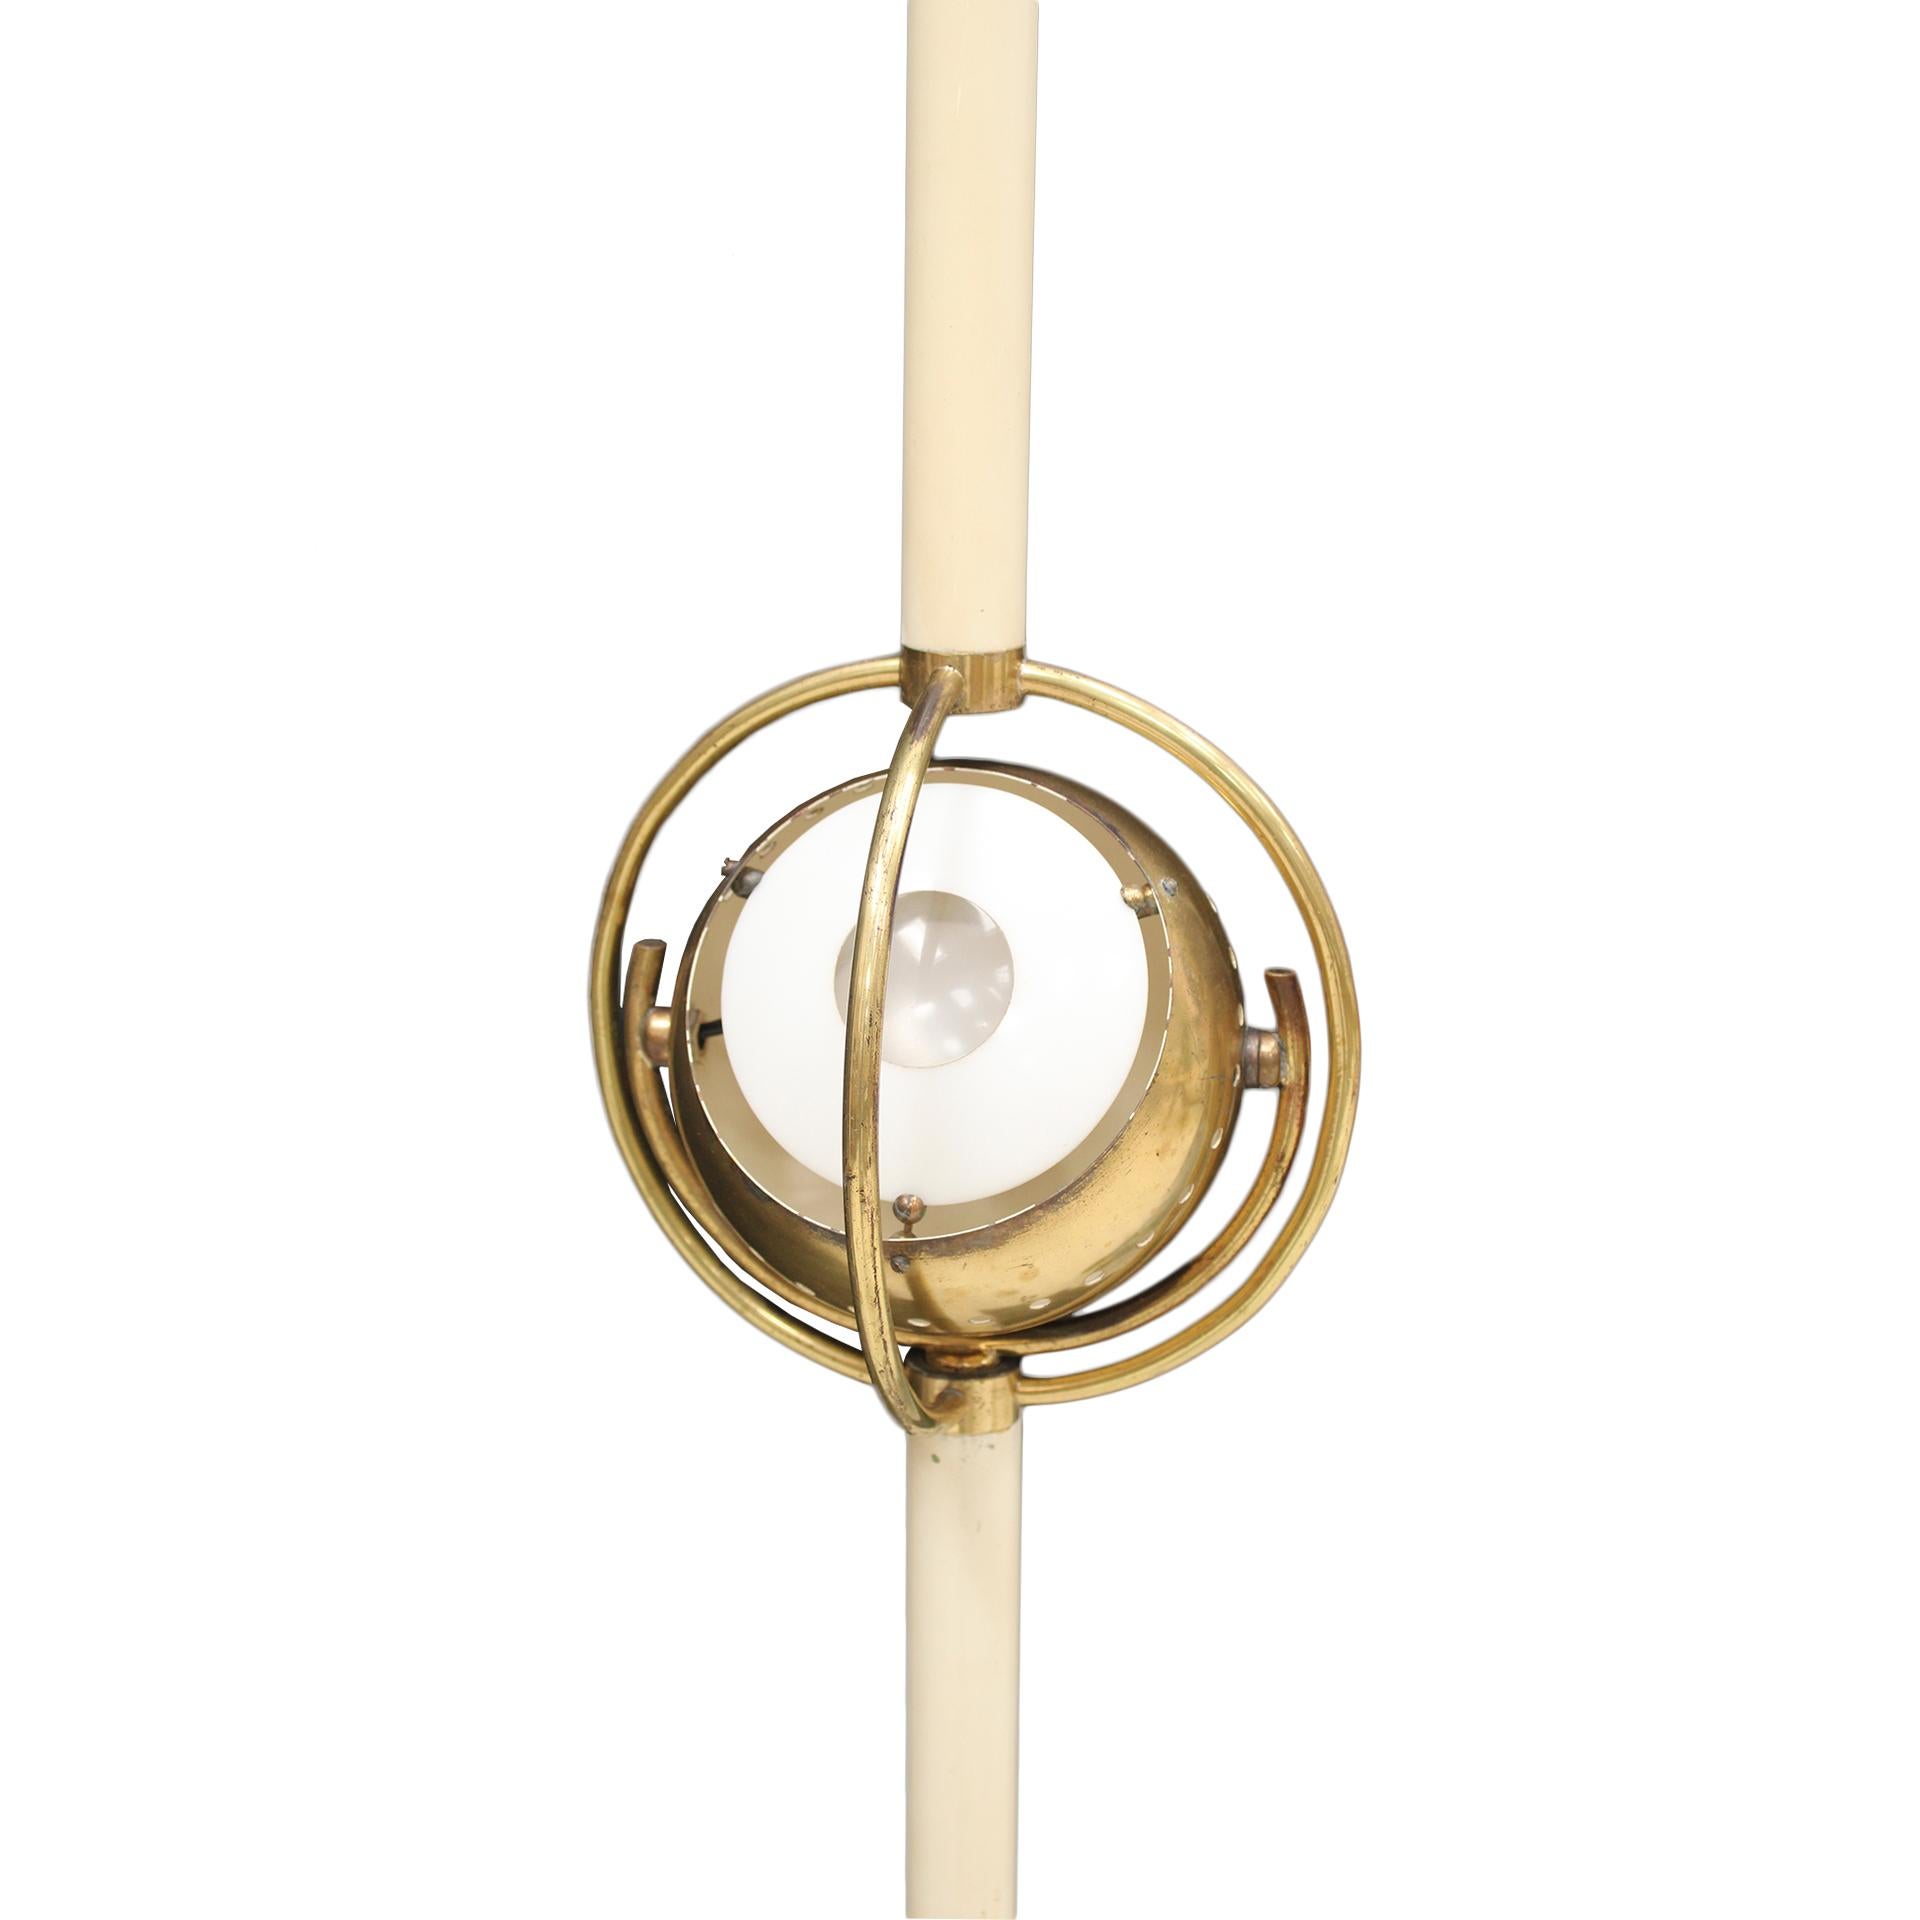 Le lampadaire italien Polifemo, conçu par Angelo Lelli, est un remarquable luminaire du milieu du siècle qui illustre le style emblématique du designer. By Design Modern-Light, connu pour son approche innovante du design moderne de l'éclairage, a